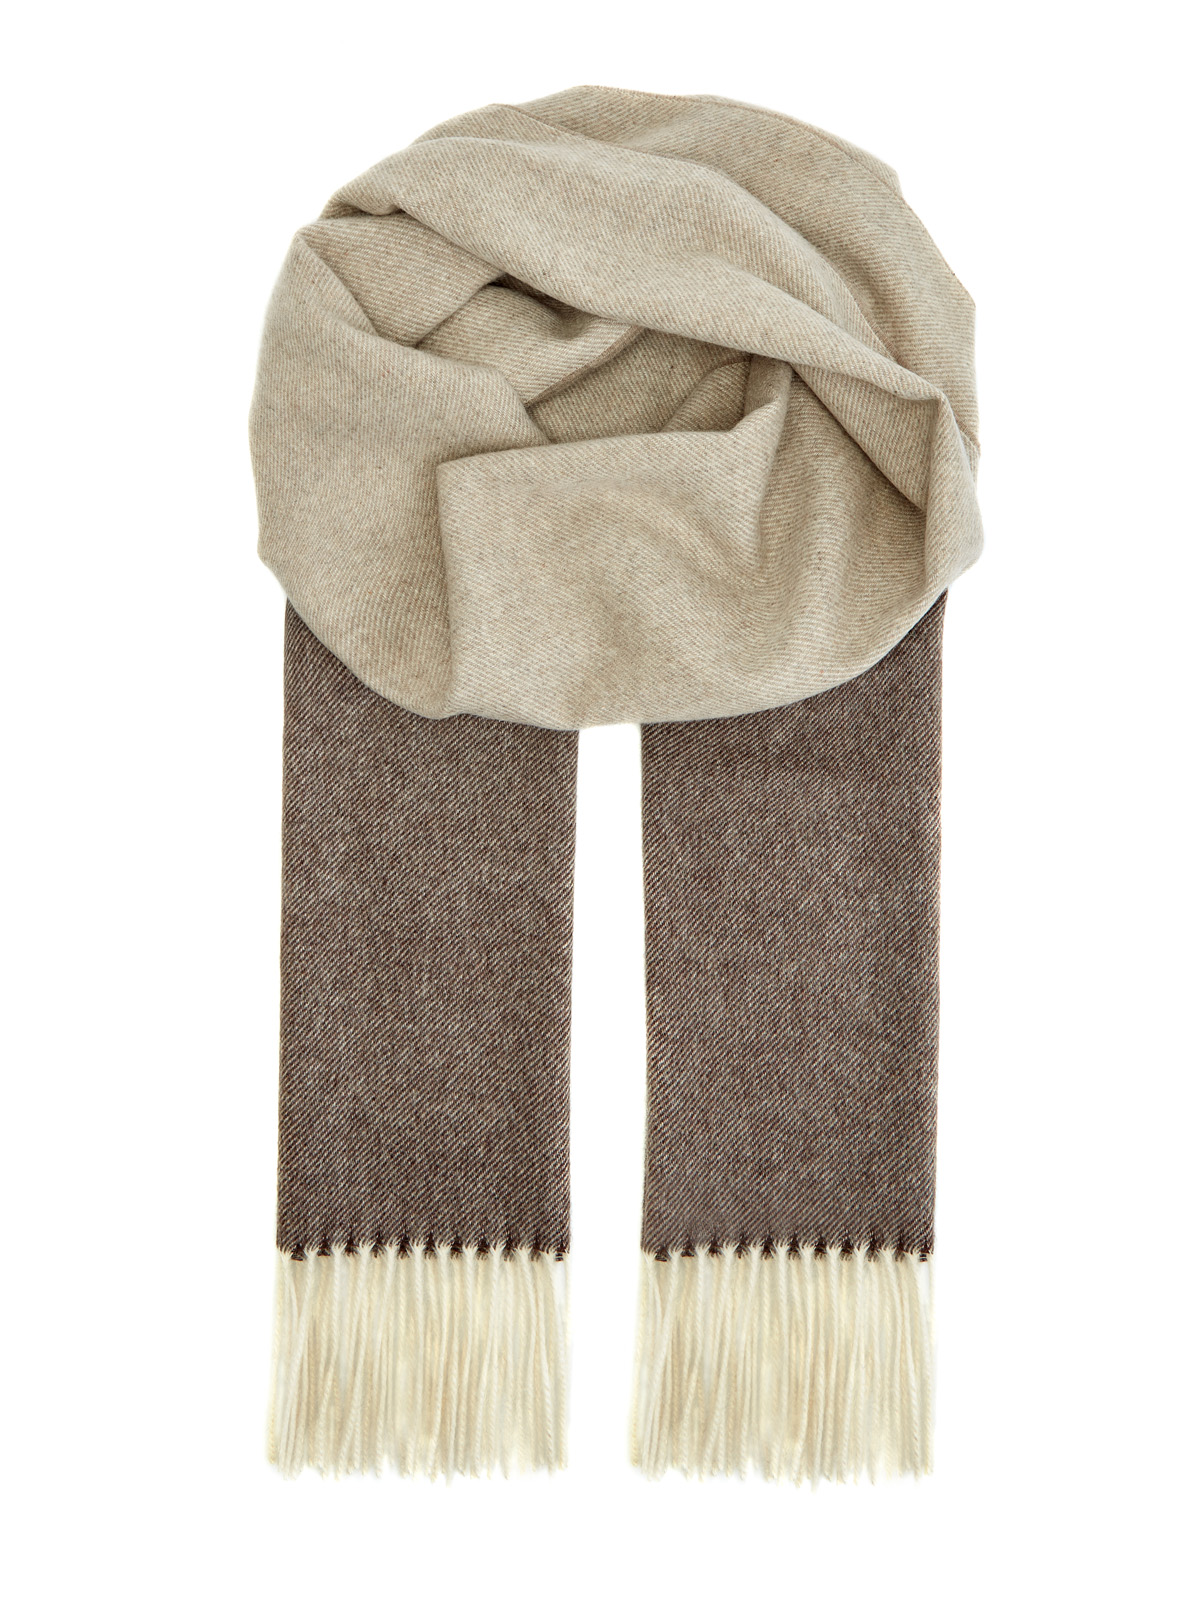 Кашемировый шарф ручной работы в бежево-коричневой гамме BERTOLO CASHMERE, цвет коричневый, размер 58 - фото 1